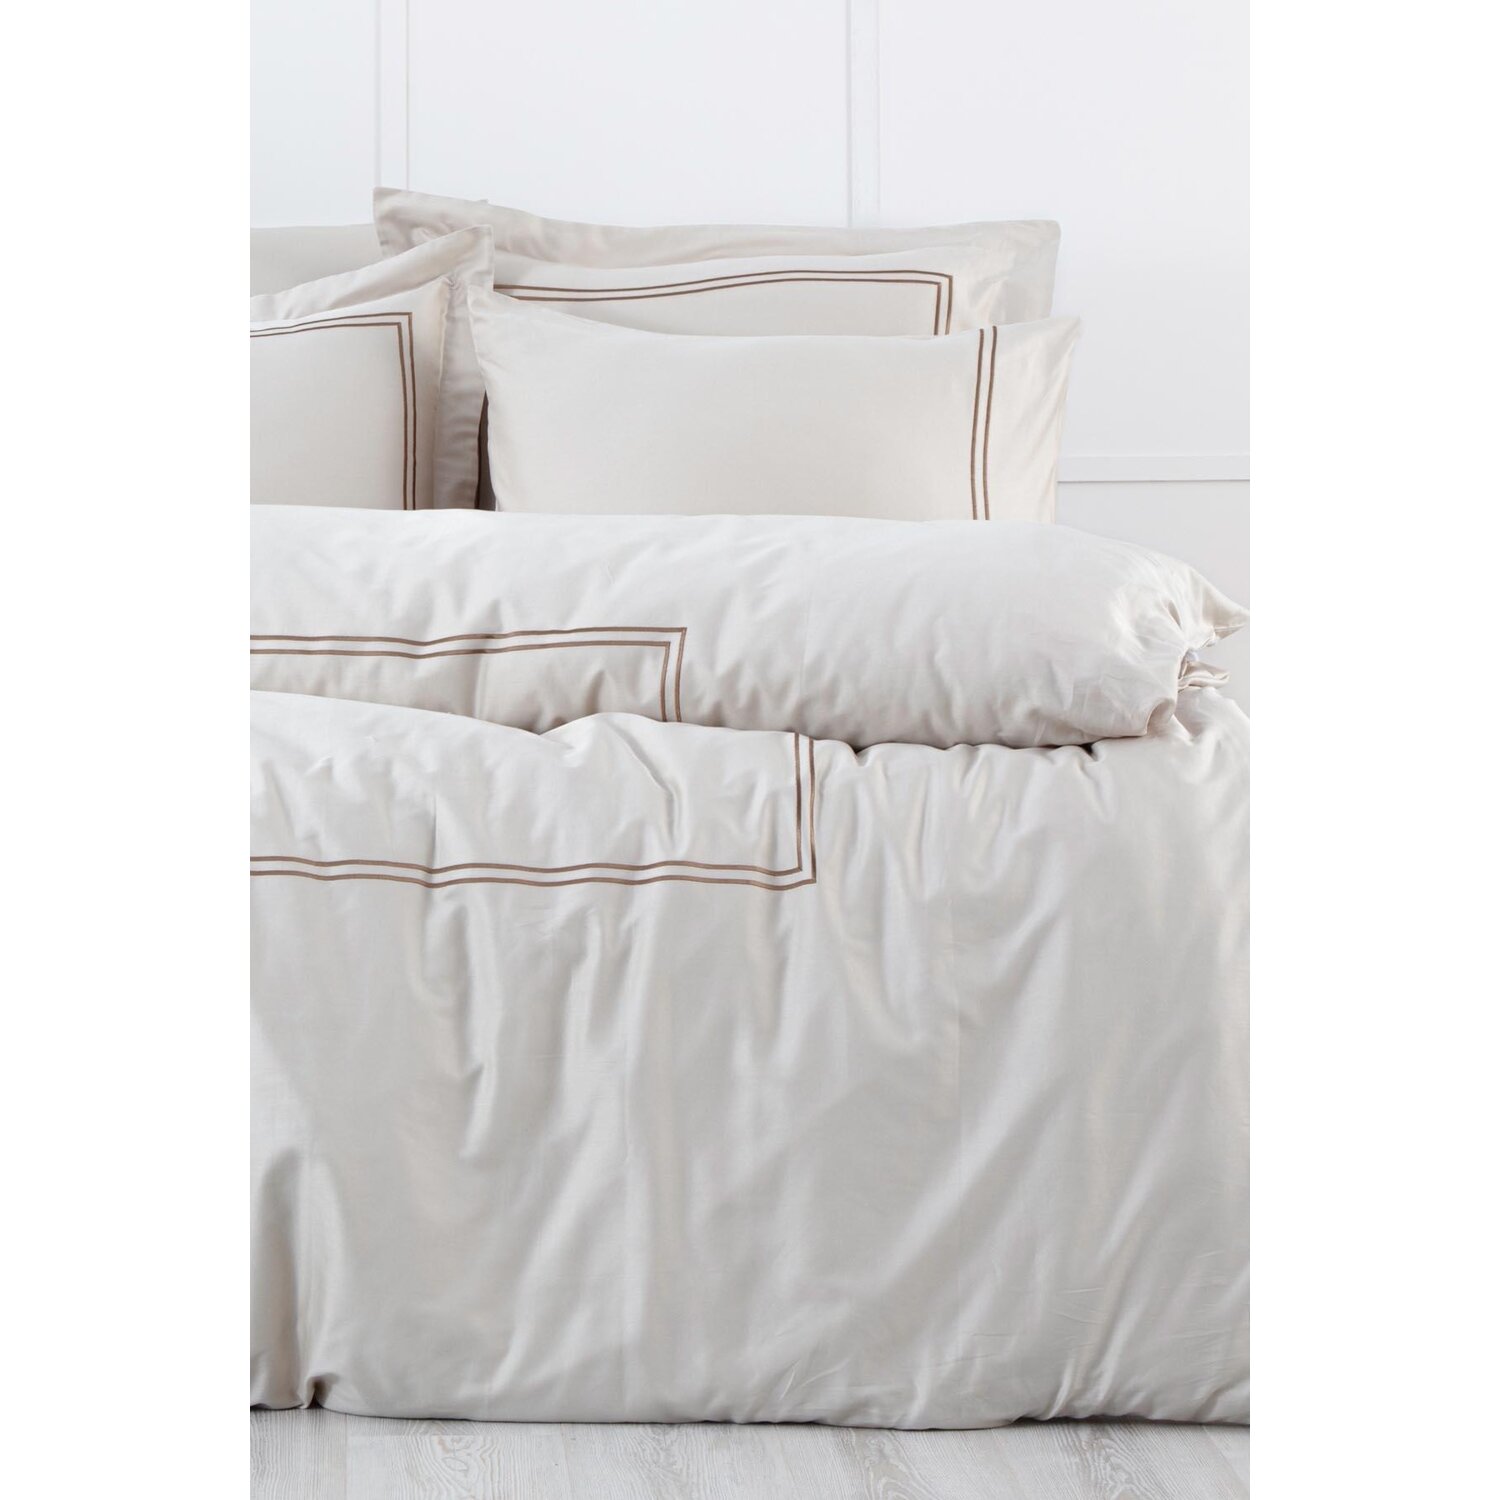 Экокотон Lavin King Size Комплект постельного белья 100% органический хлопок сатин с вышивкой бежевый-золотой 240X220 см